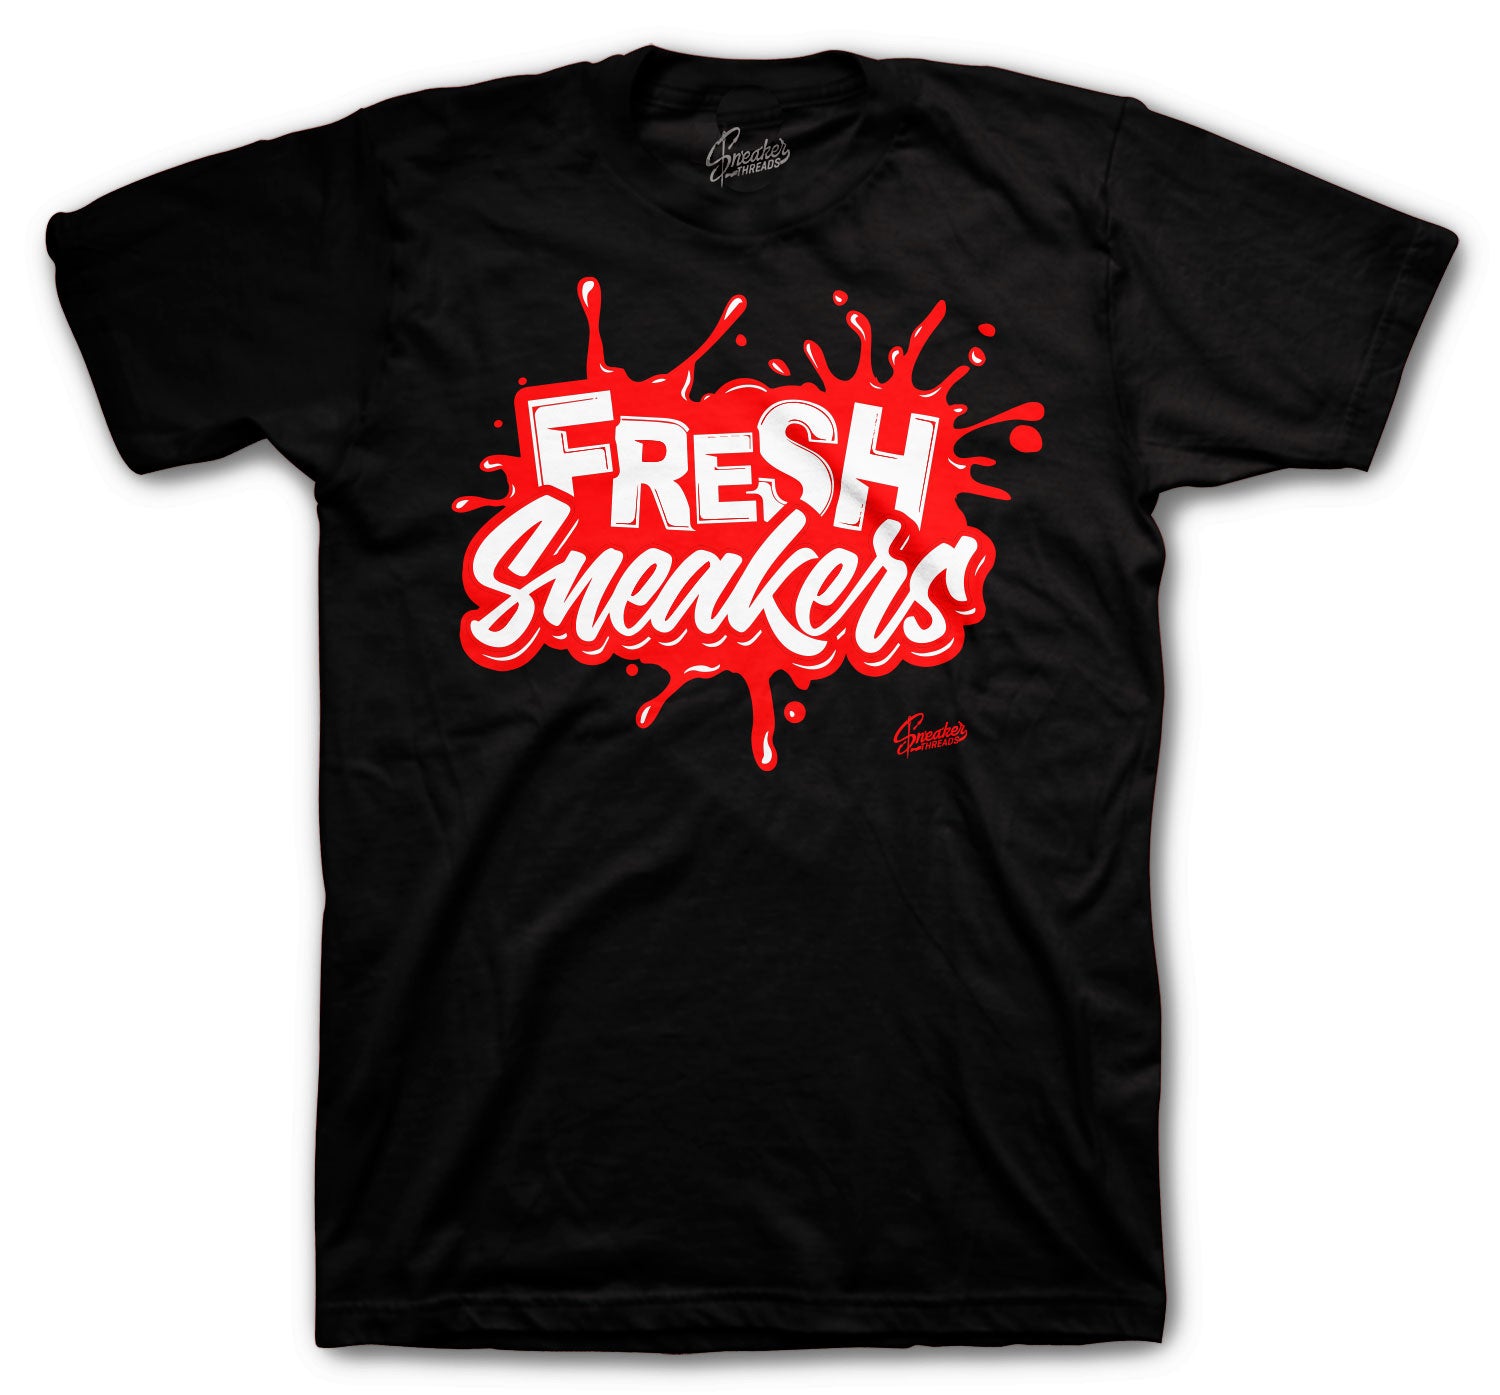 Retro 11 IE Bred Shirt - Fresh Sneakers - Black